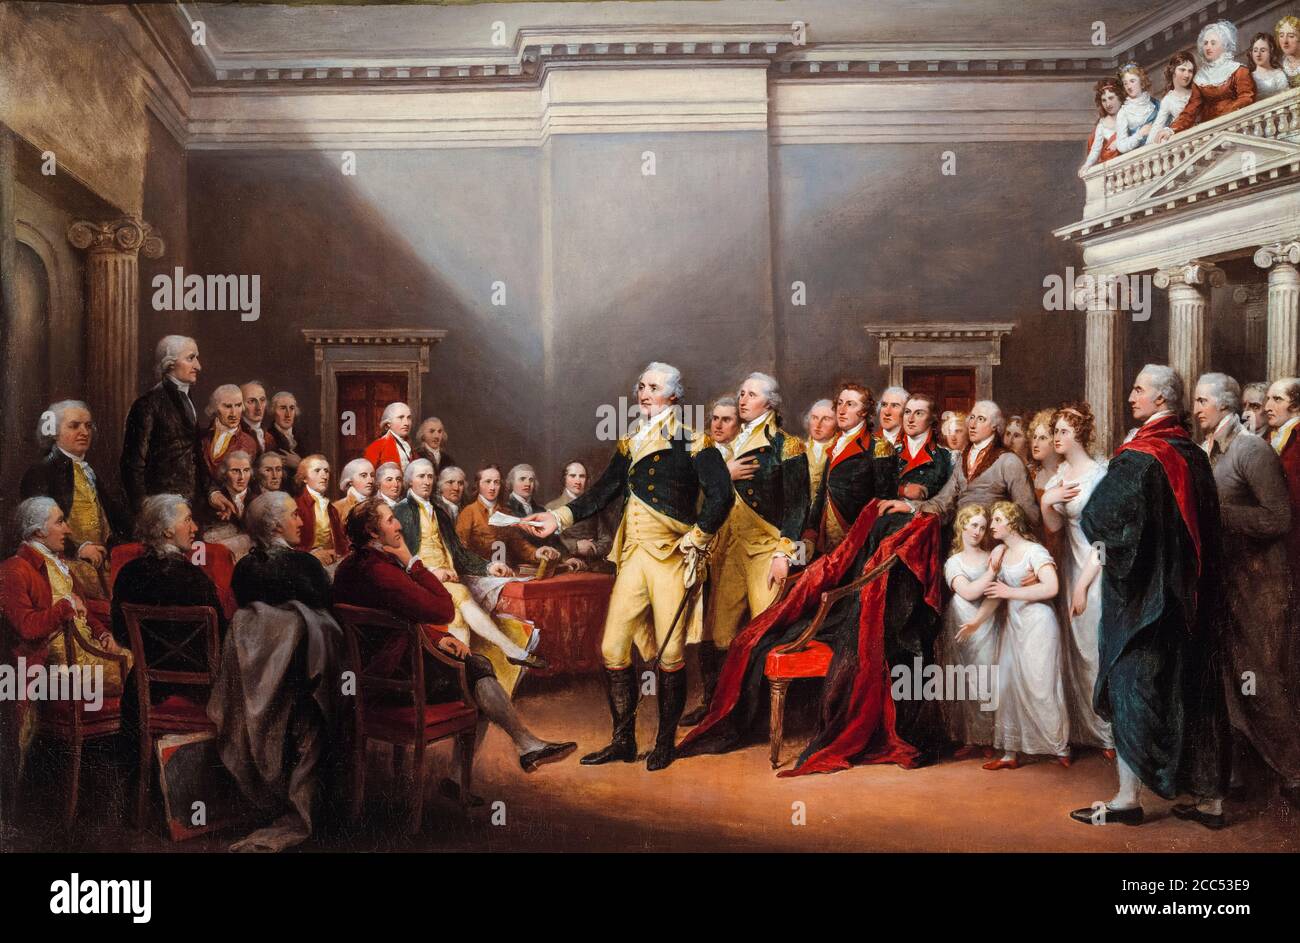 La dimisión del General Washington, 23 de diciembre de 1783 (George Washington dirigiéndose al Congreso), pintura de John Trumbull, 1824-1828 Foto de stock